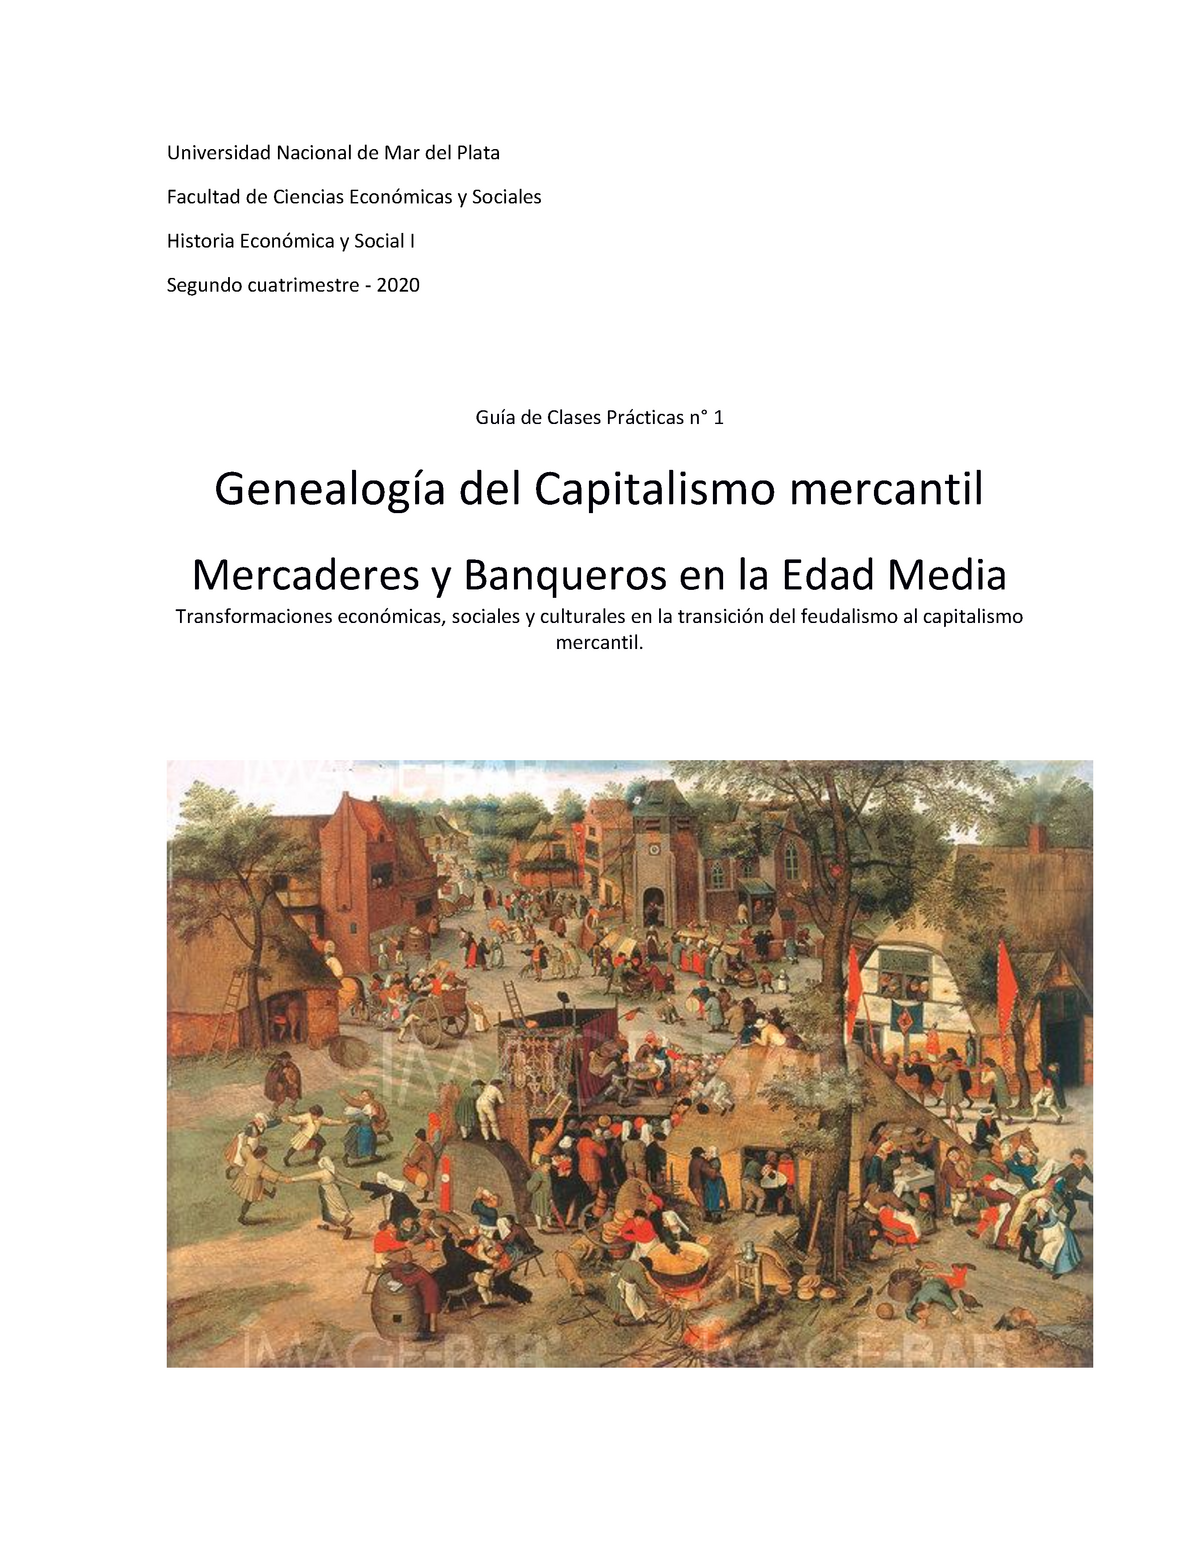 Genealogía capitalismo mercantil, Guí de TP nº1 2020 Historia Económica Social General Studocu